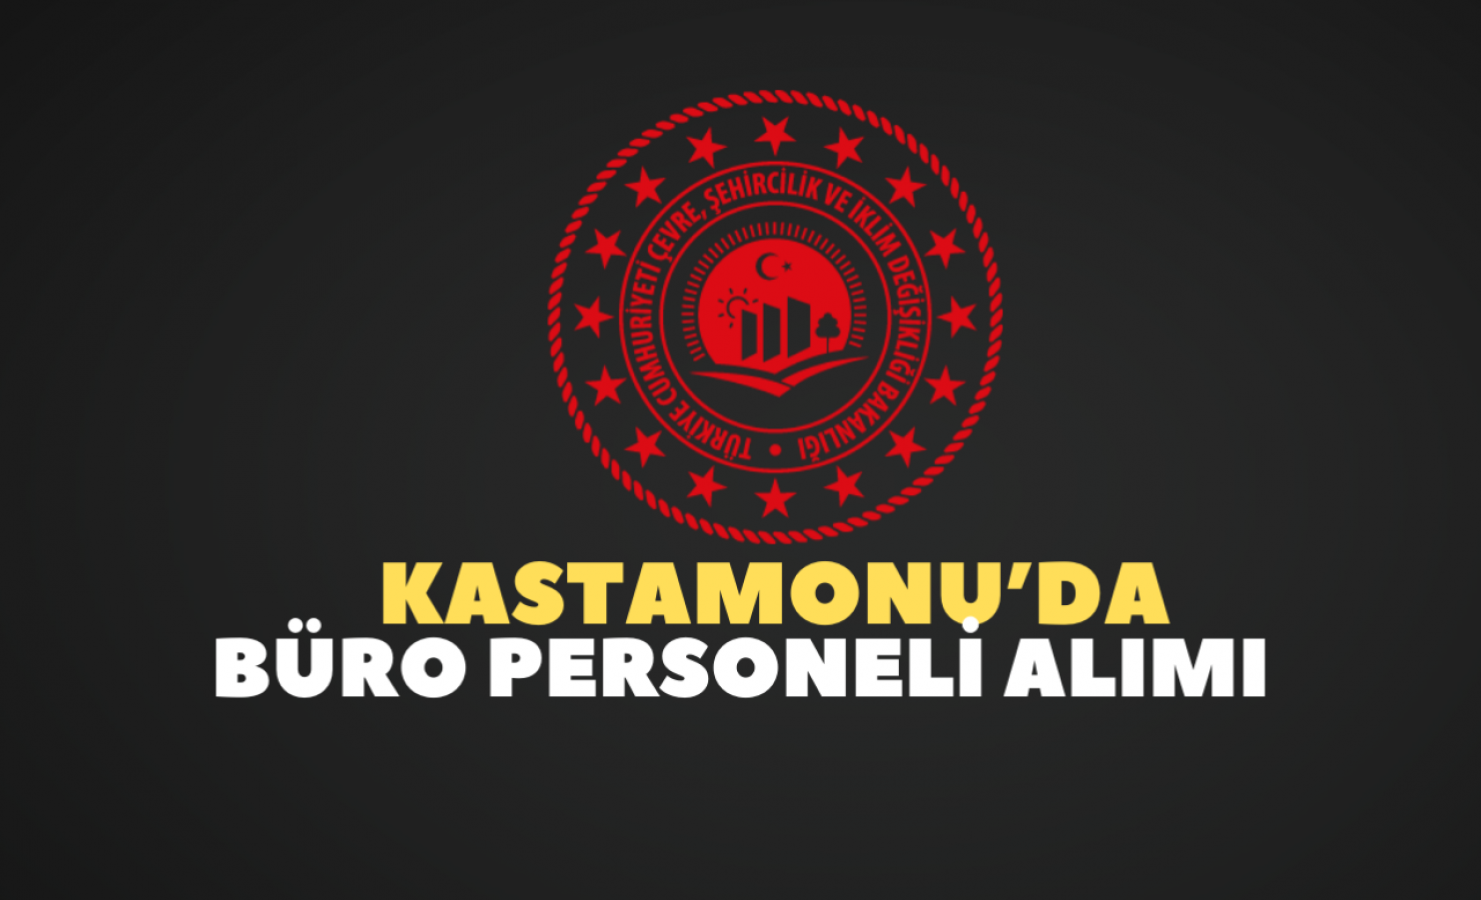 Kastamonu'da kamuya personel alınacak!